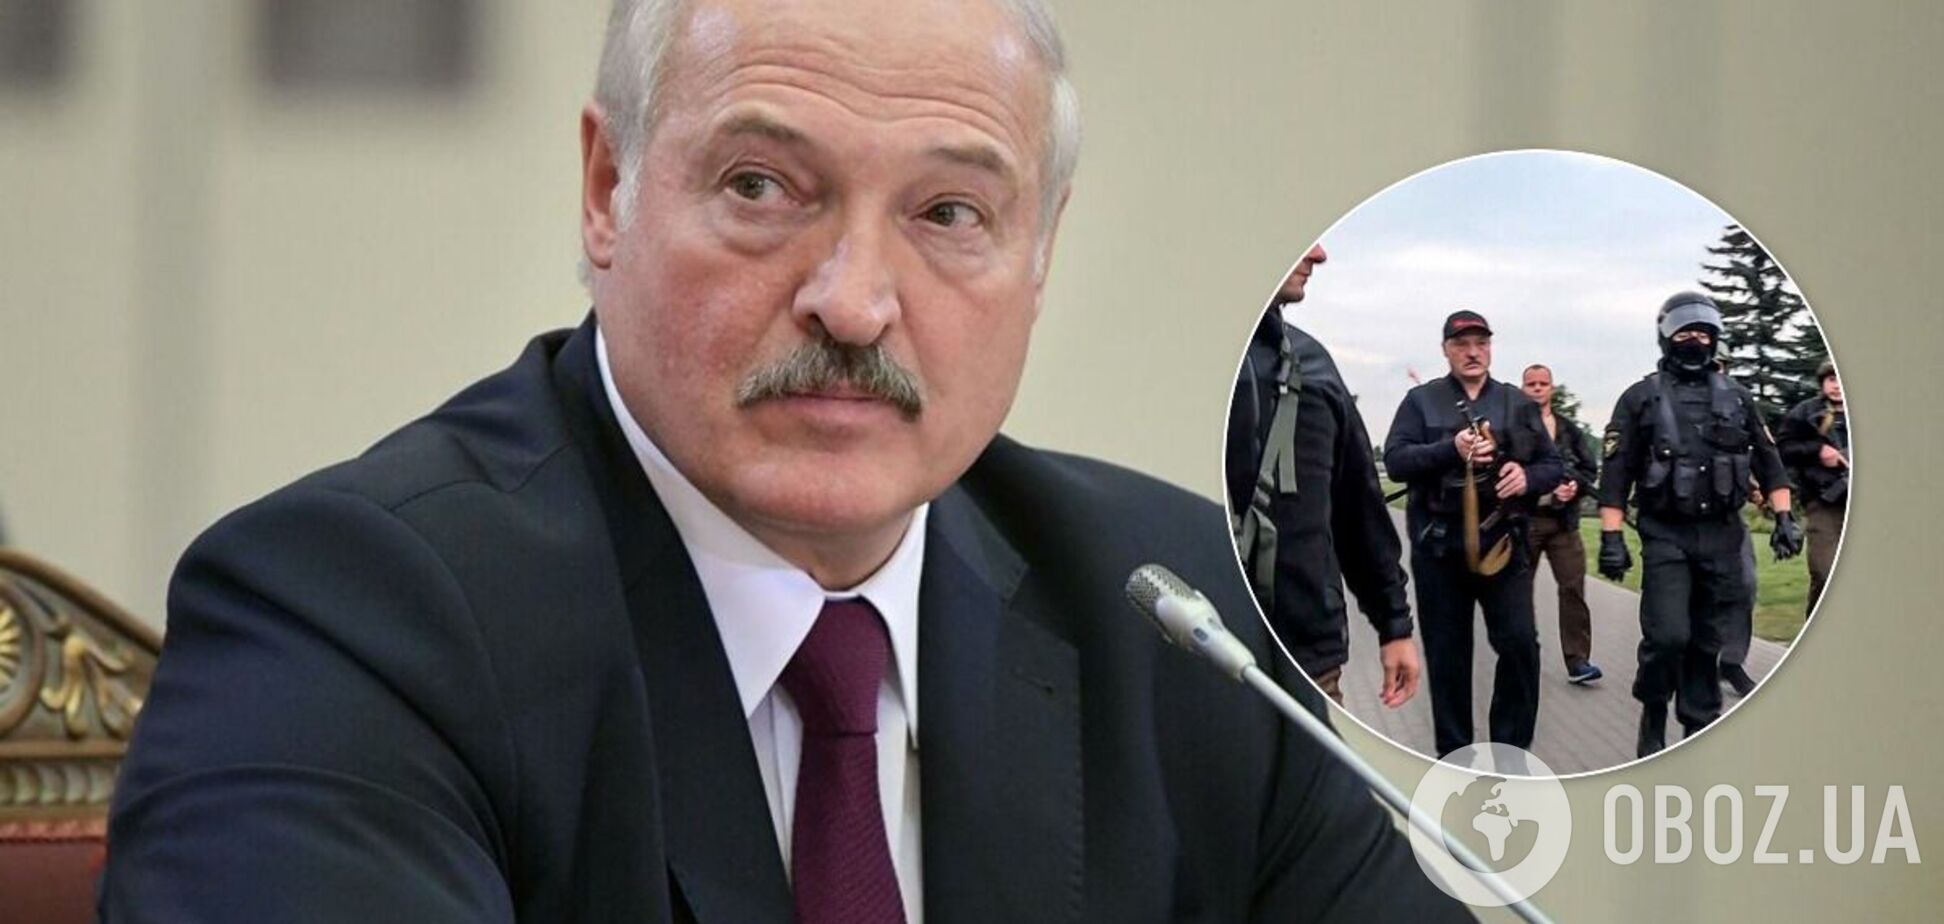 Лукашенко появился с автоматом 23 августа